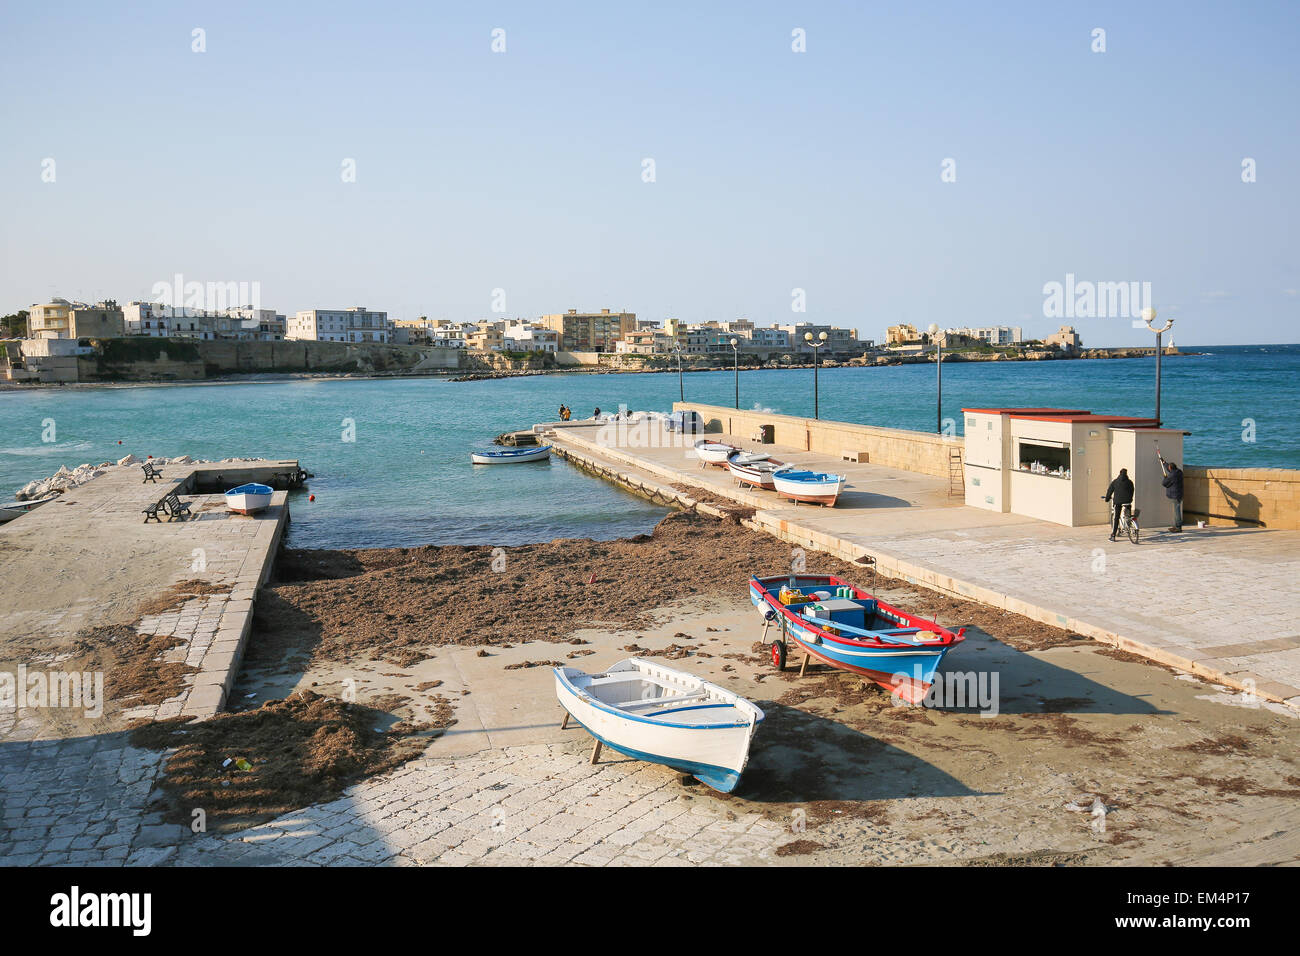 OTRANTO, Italia - 13 de marzo de 2015: frente al mar en la ciudad de Otranto, una ciudad en la provincia de Lecce, Puglia, Italia. Foto de stock